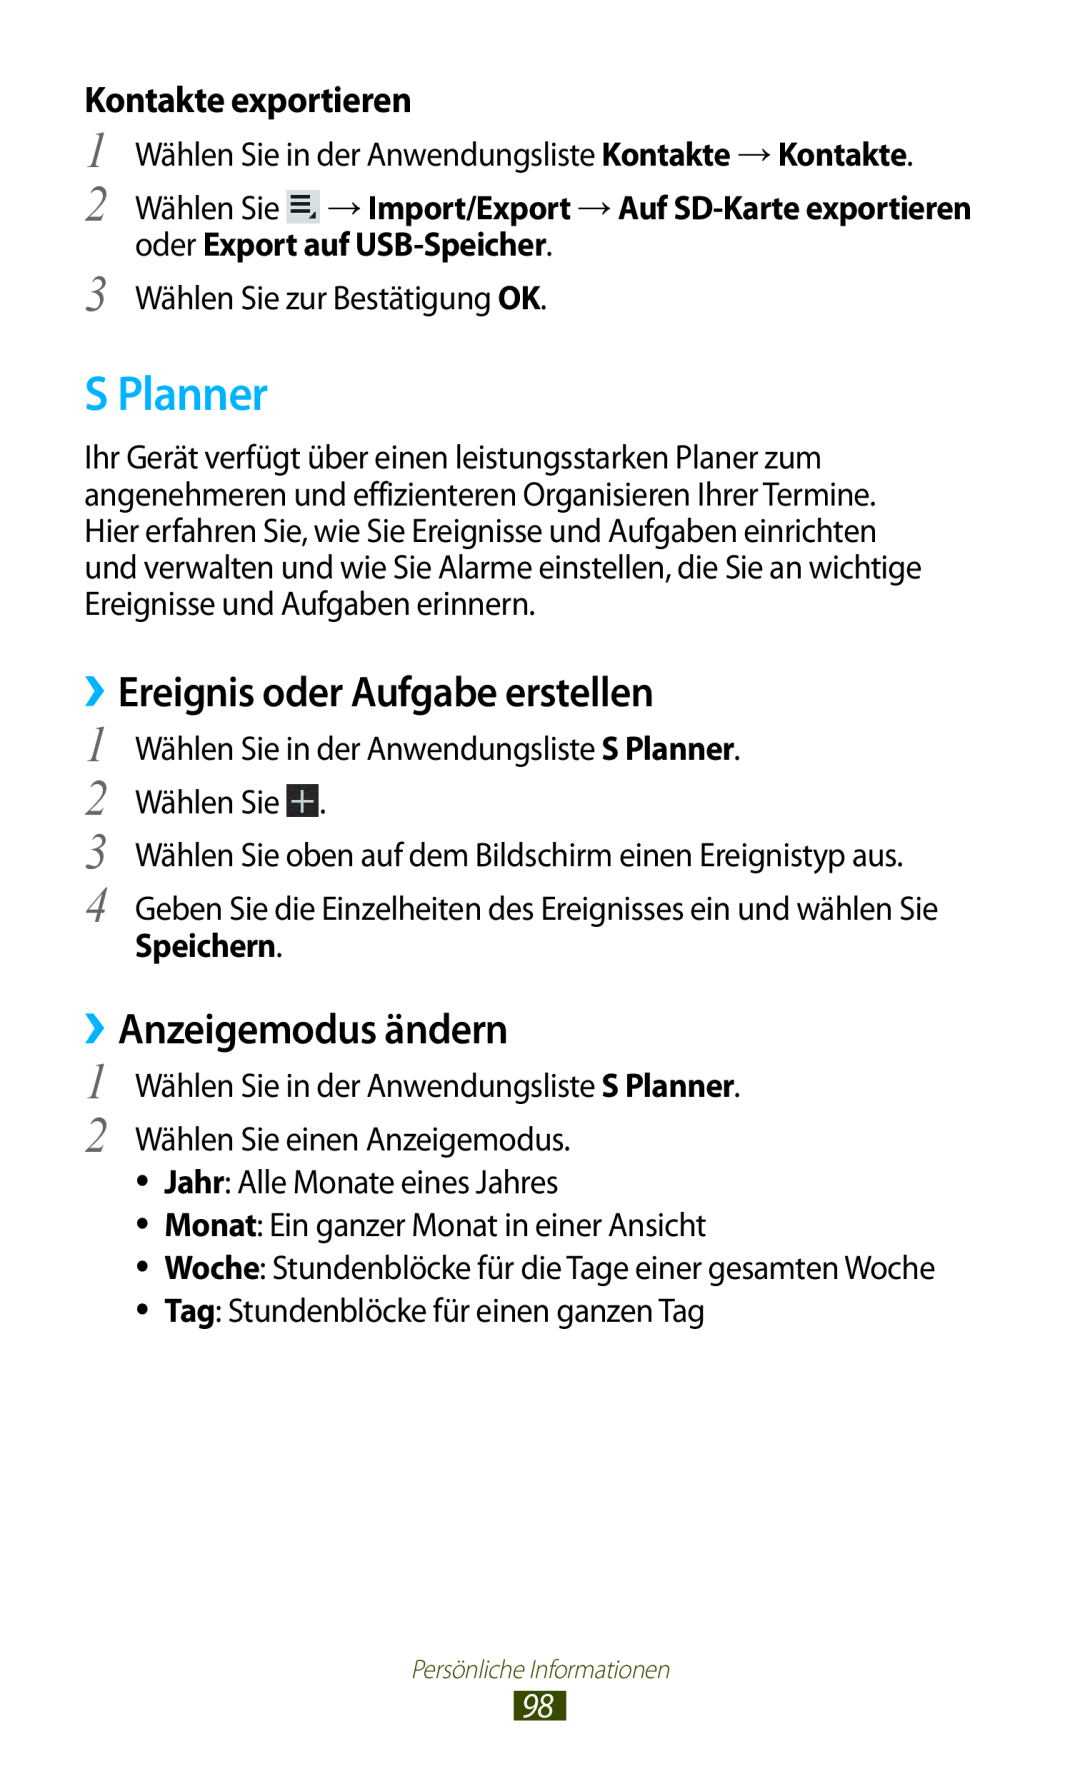 Samsung GT-P5100ZWEAUT manual S Planner, ››Ereignis oder Aufgabe erstellen, ››Anzeigemodus ändern, Kontakte exportieren 